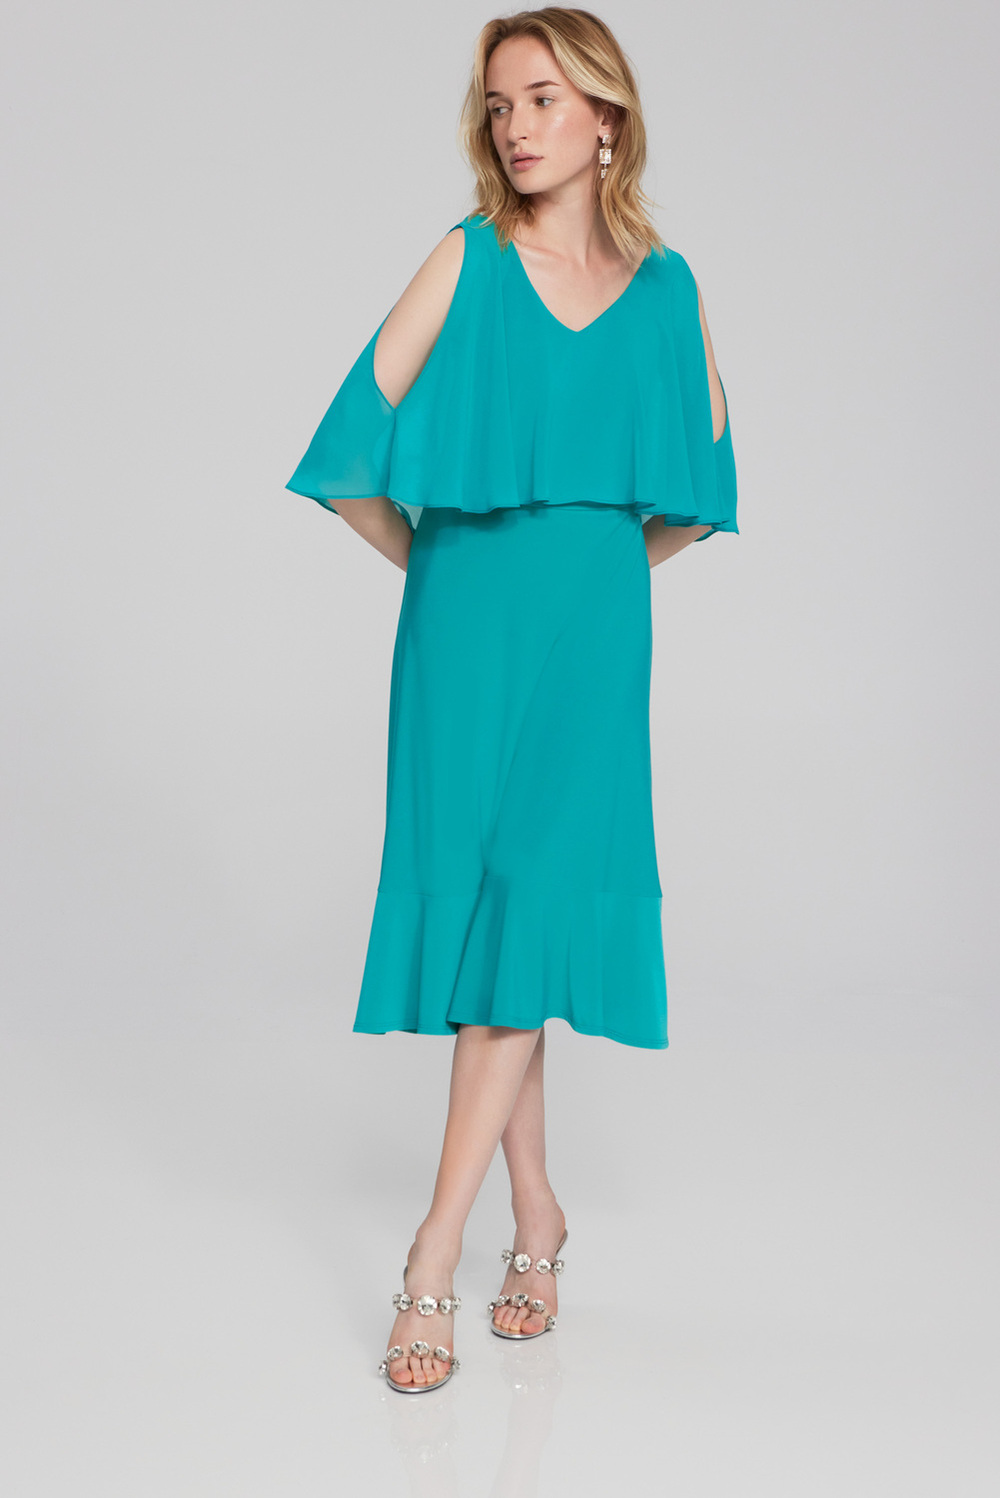 Dual Fabric Ruffled Dress Style 241706. Ocean Blue